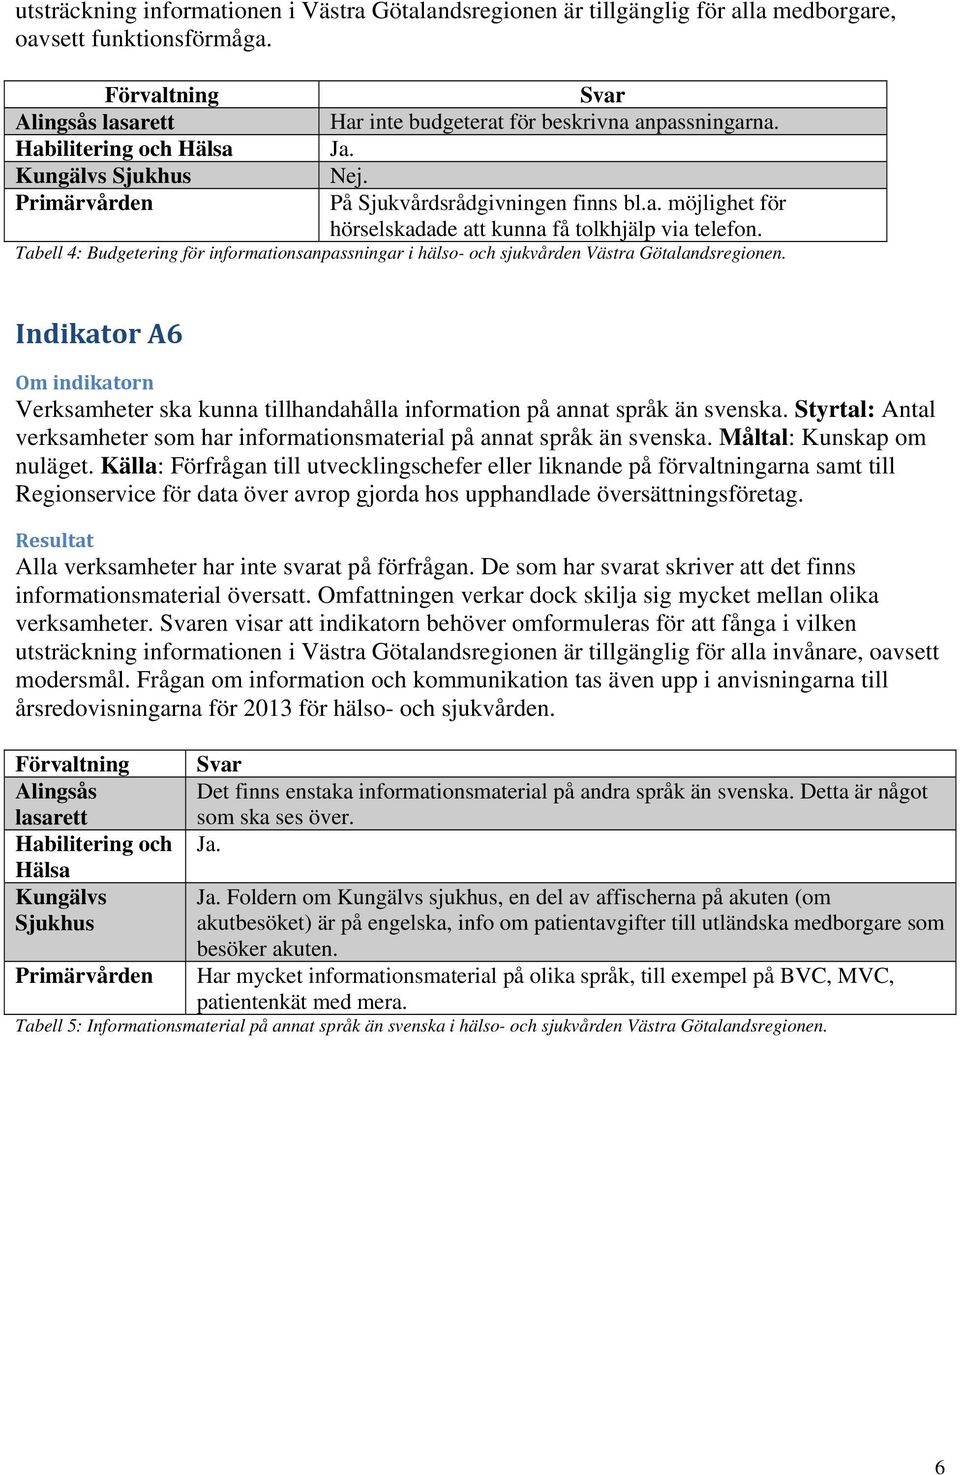 Tabell 4: Budgetering för informationsanpassningar i hälso- och sjukvården Västra Götalandsregionen. Indikator A6 Verksamheter ska kunna tillhandahålla information på annat språk än svenska.